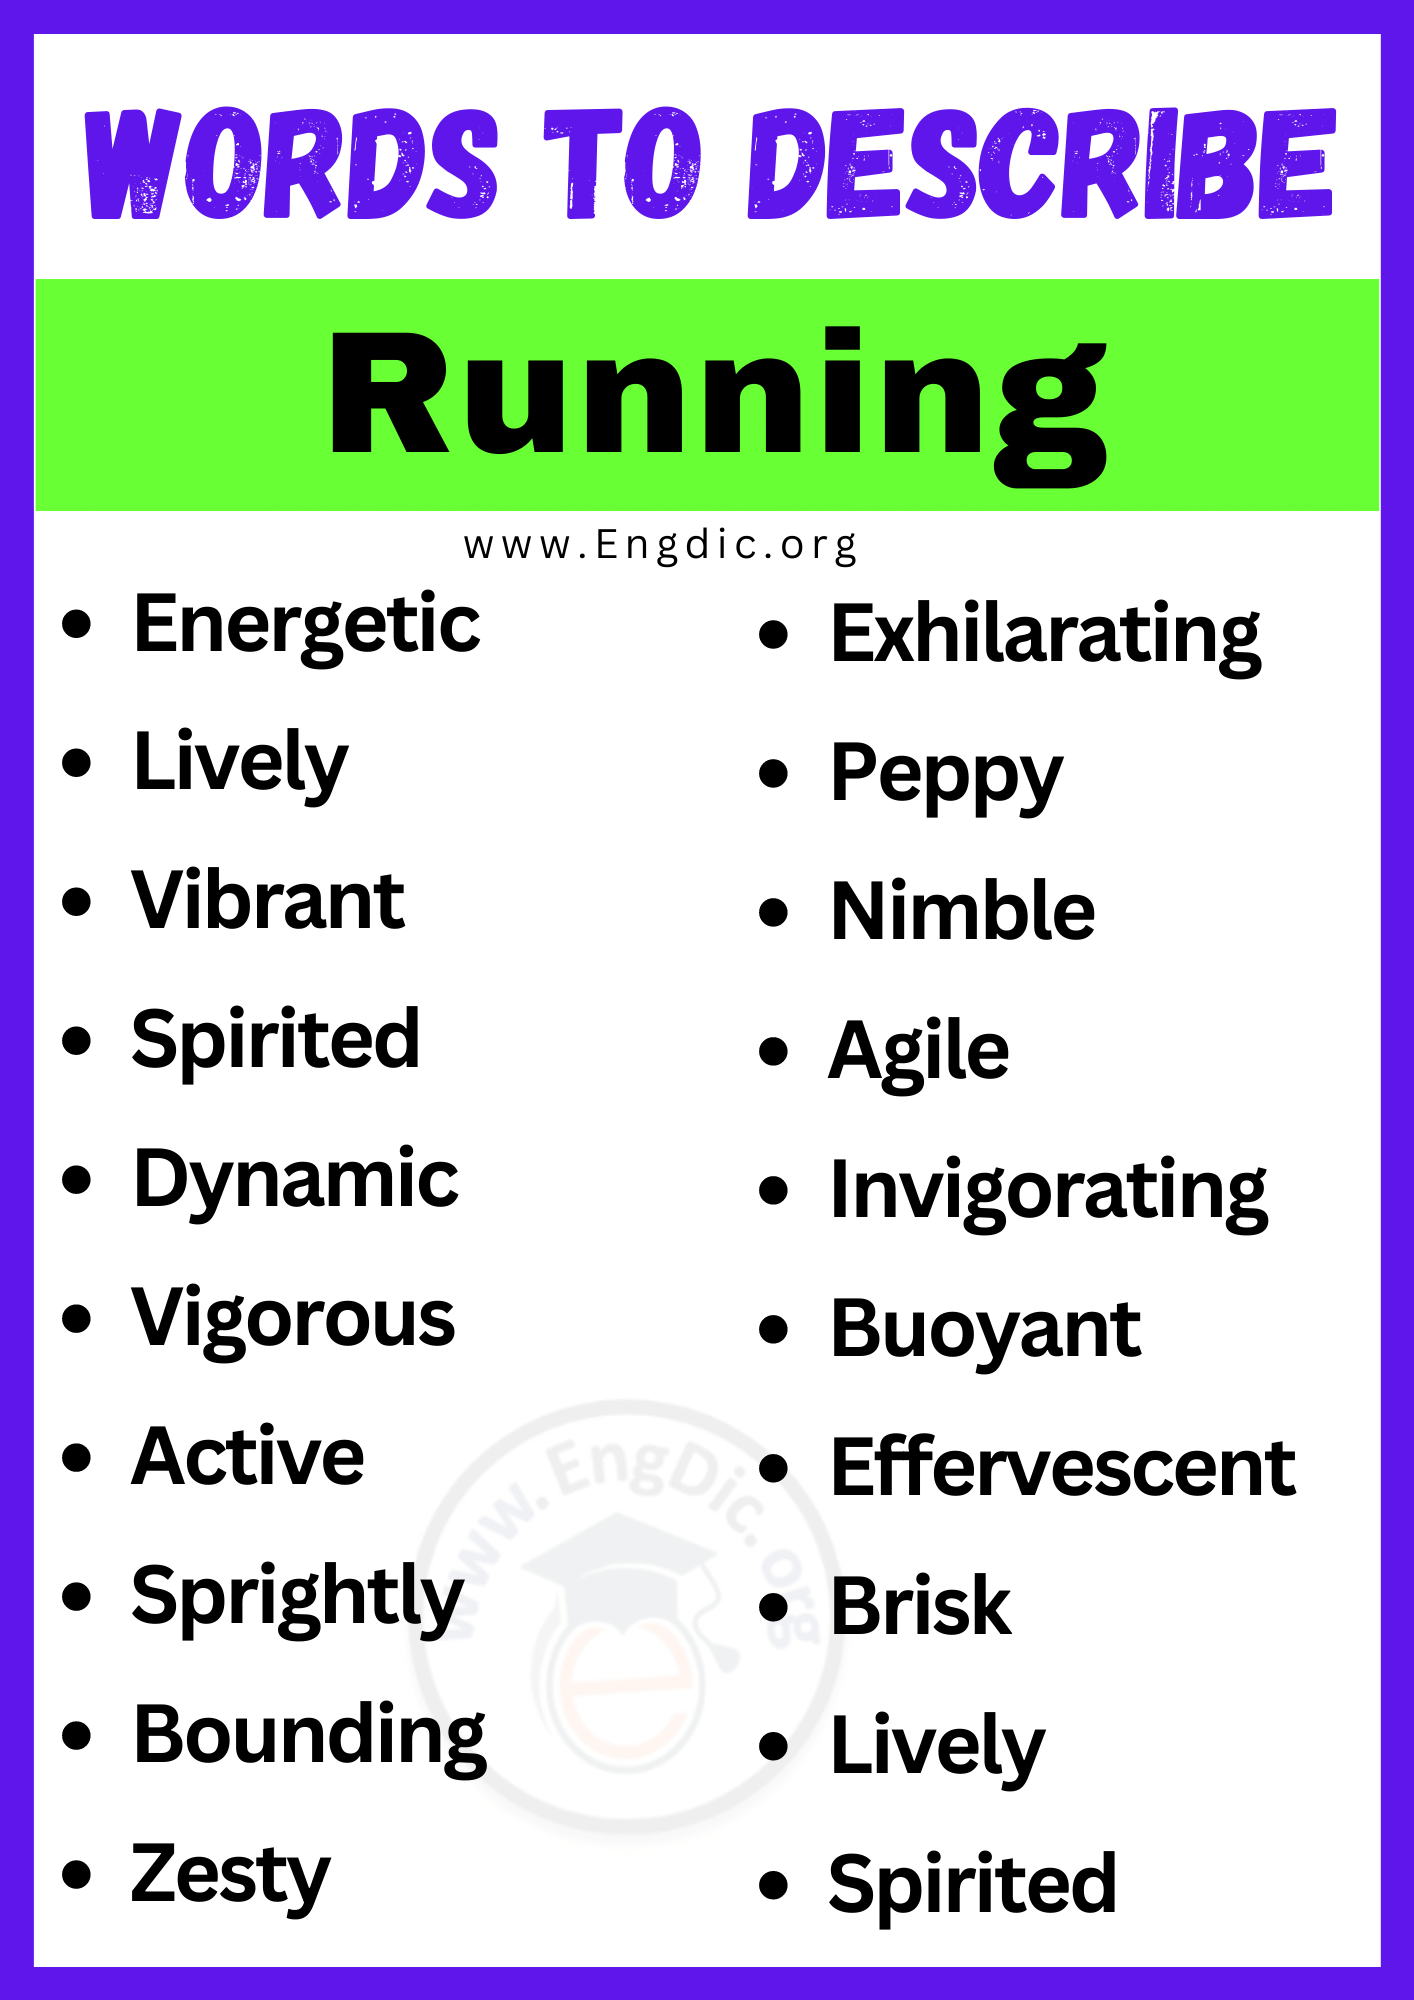 ords to Describe Runningords to Describe Running